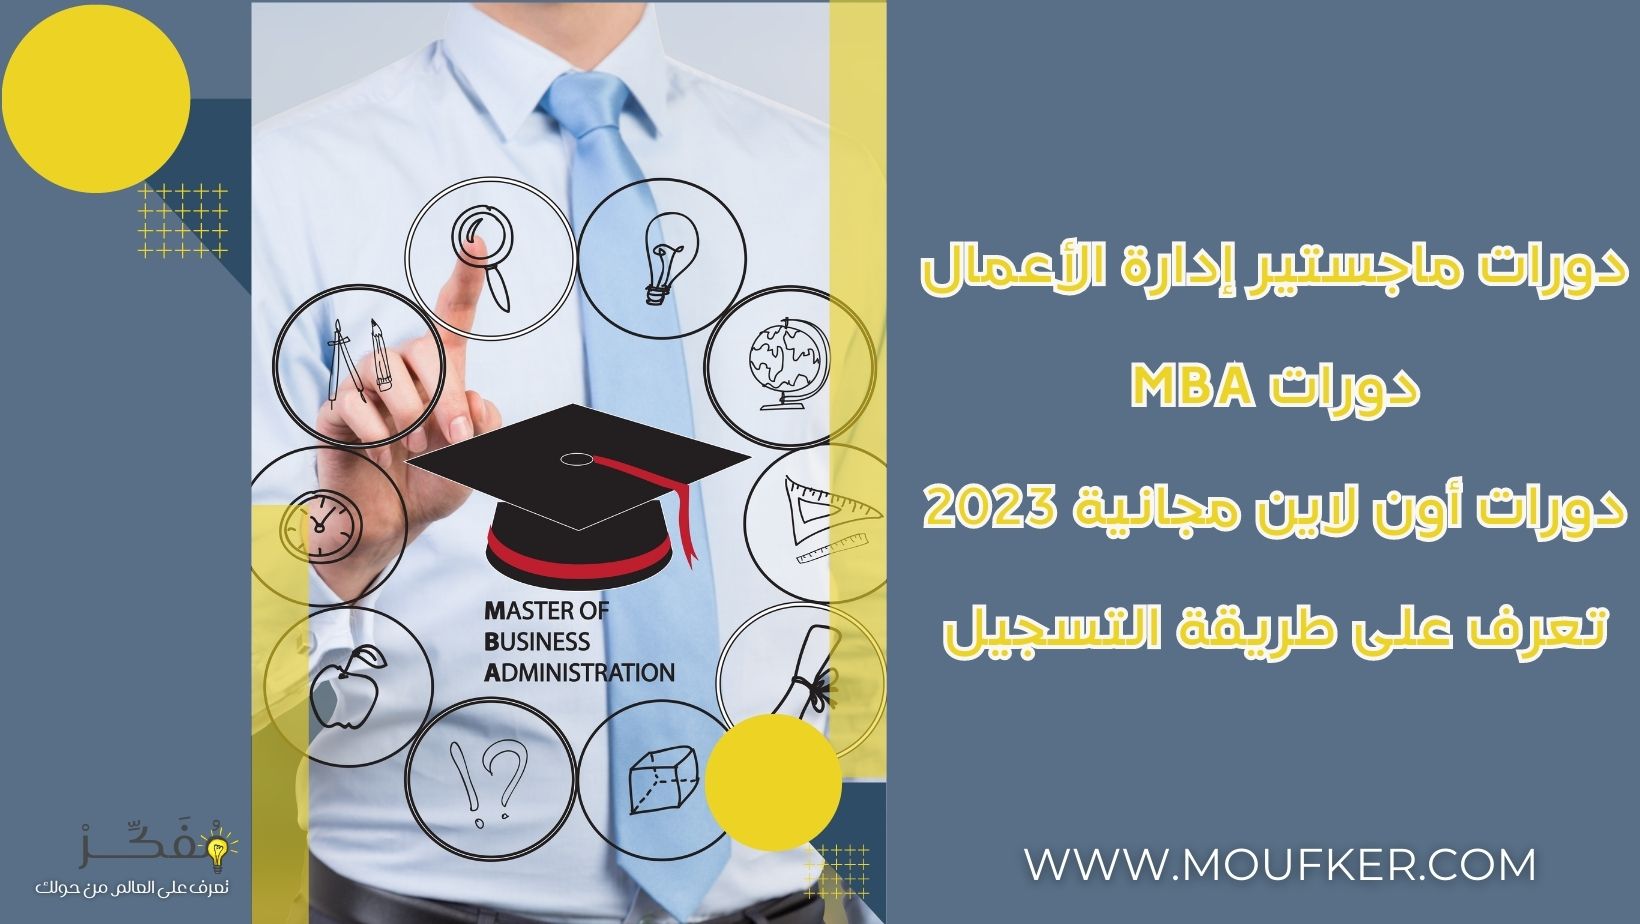 دورات ماجستير إدارة الأعمال .. دورات MBA .. دورات أون لاين مجانية 2023 تعرف على طريقة التسجيل …